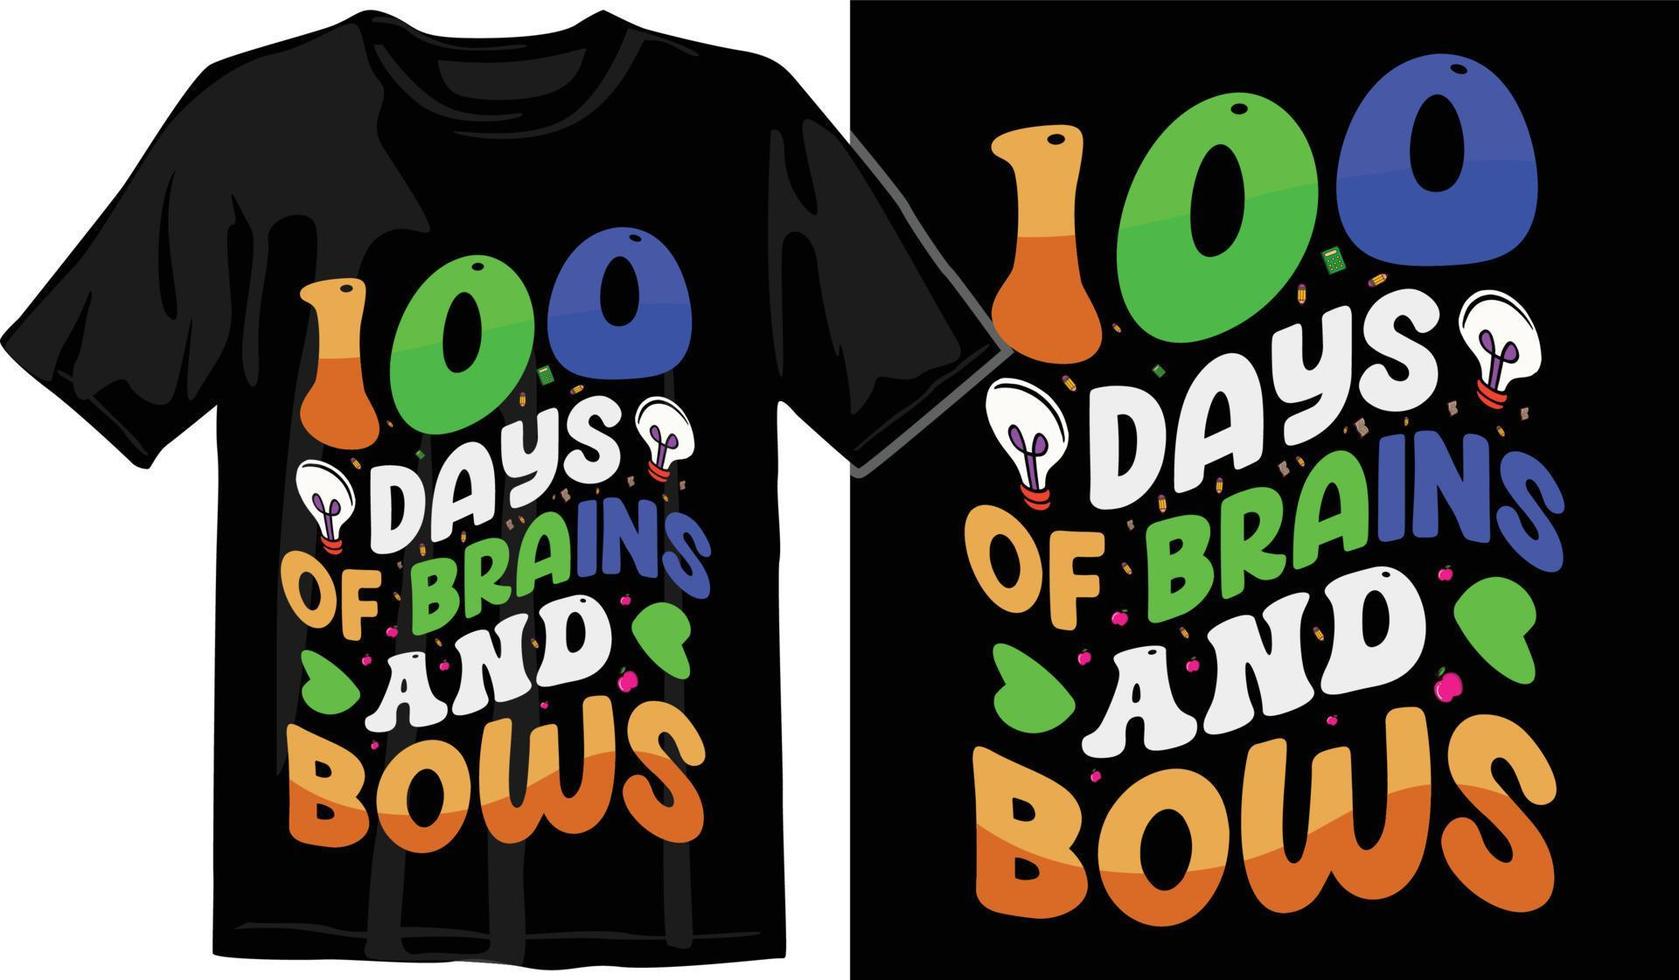 100º dias de escola, design de camiseta de cem dias, camiseta de comemoração de 100 dias vetor